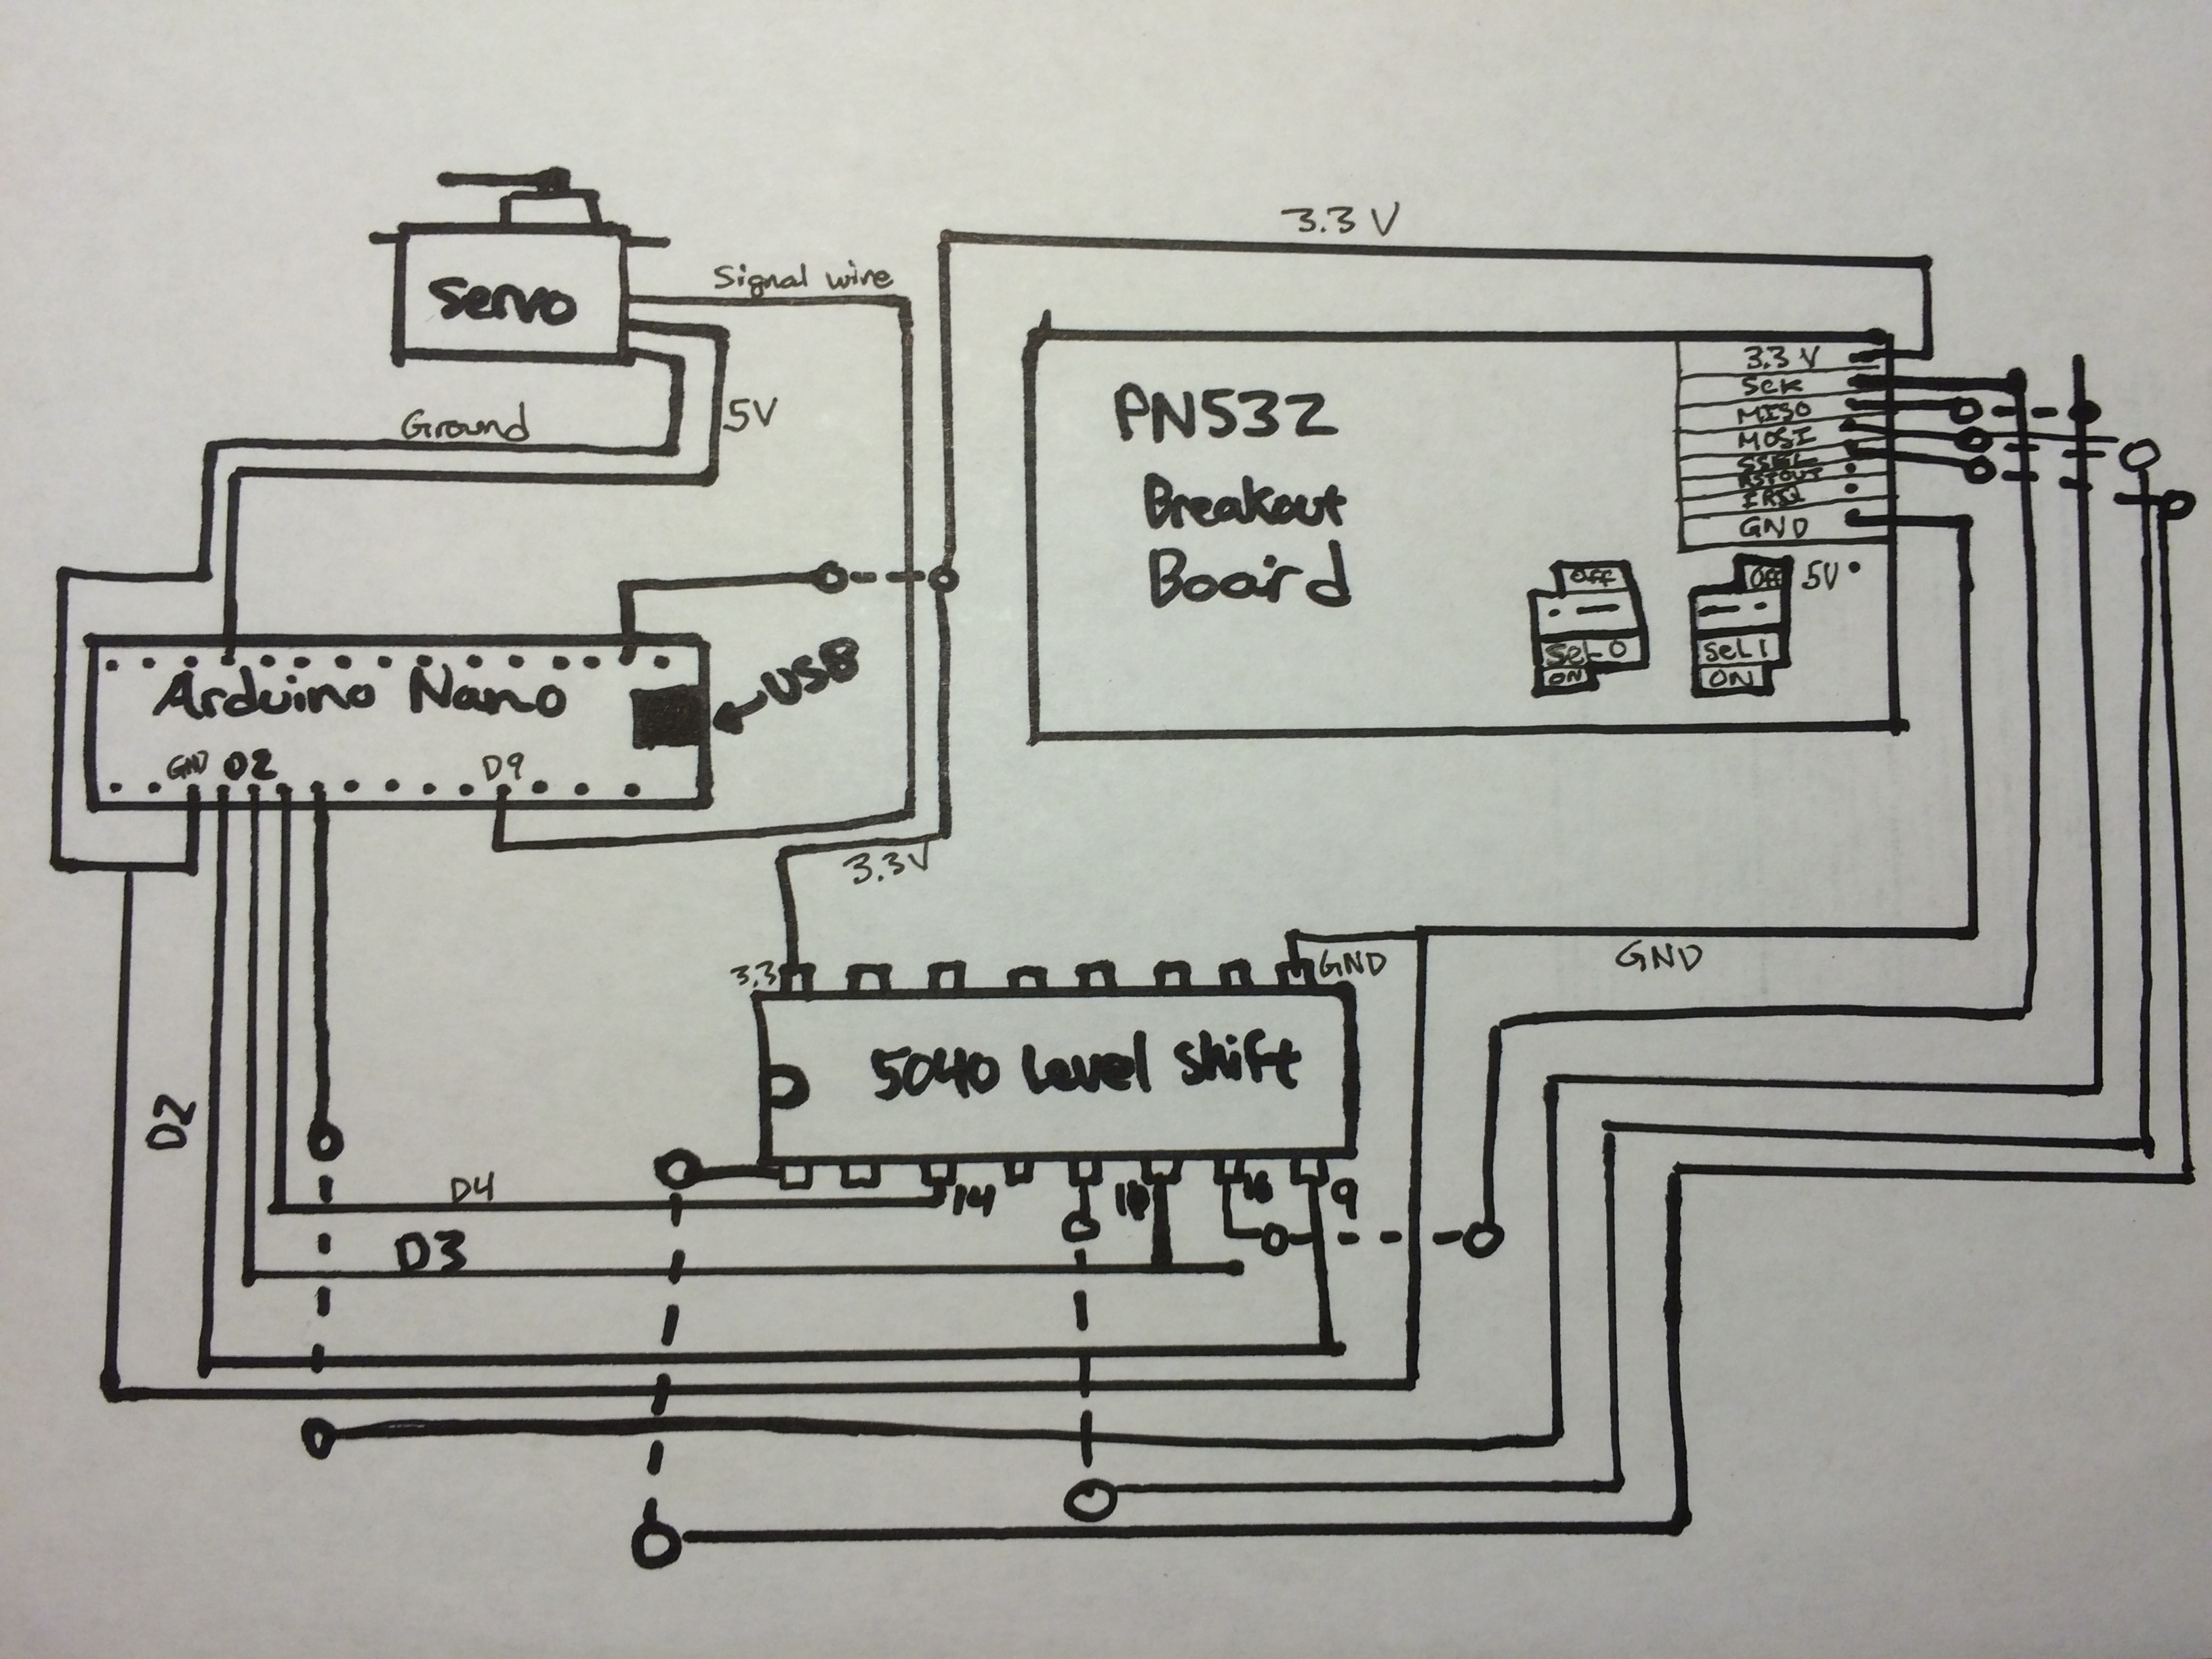 Circuit schematic for rfid door lock project